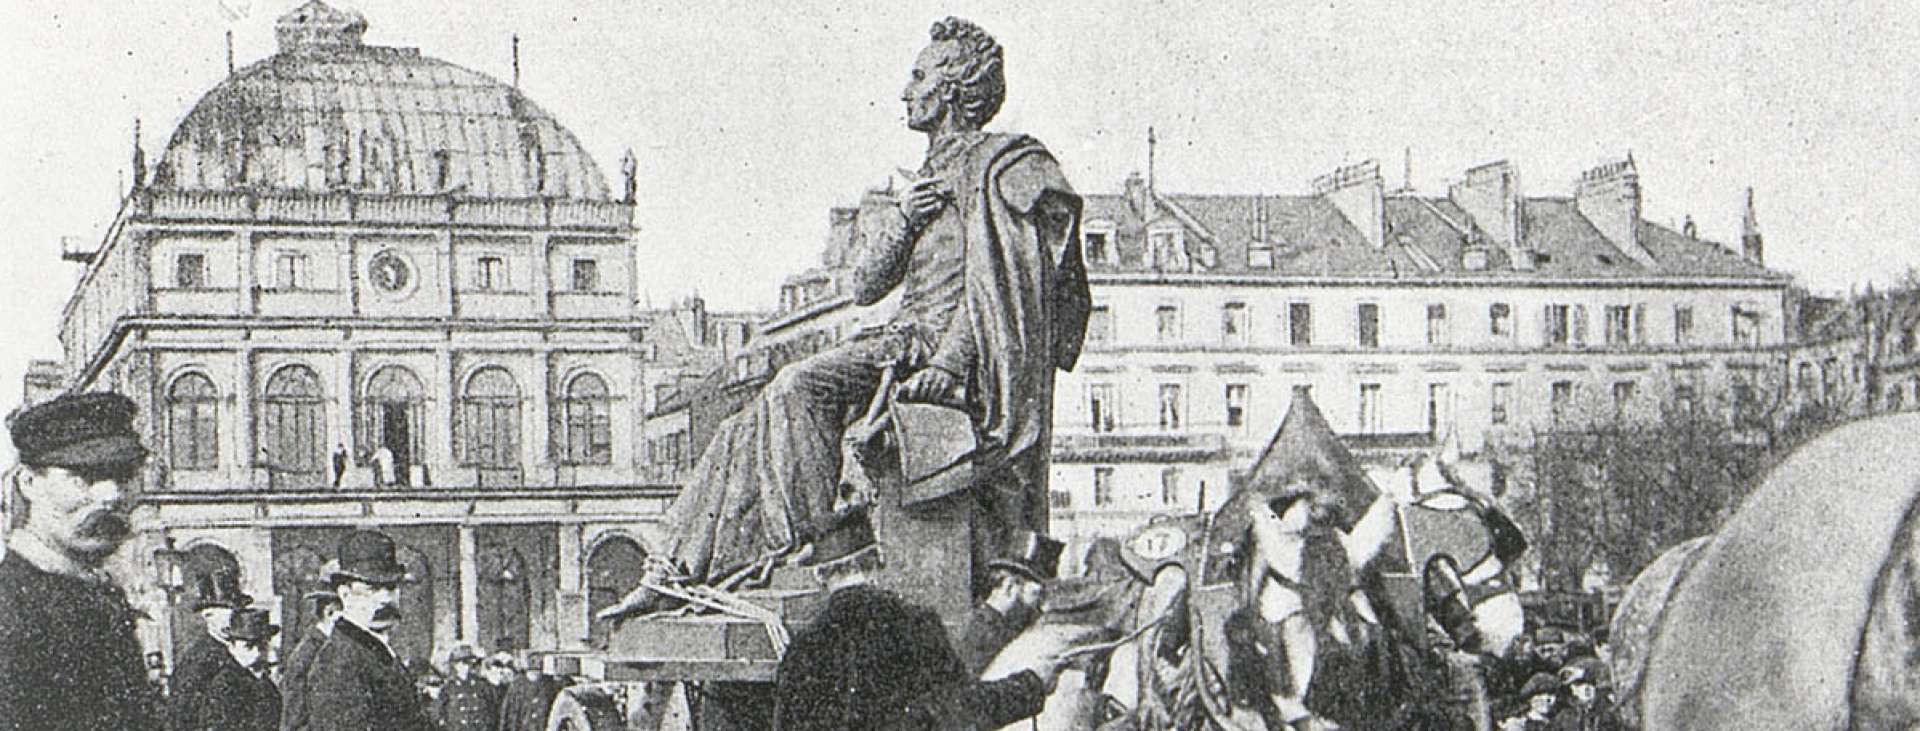 Déplacement de la statue de Casimir Delavigne (71Fi1000)